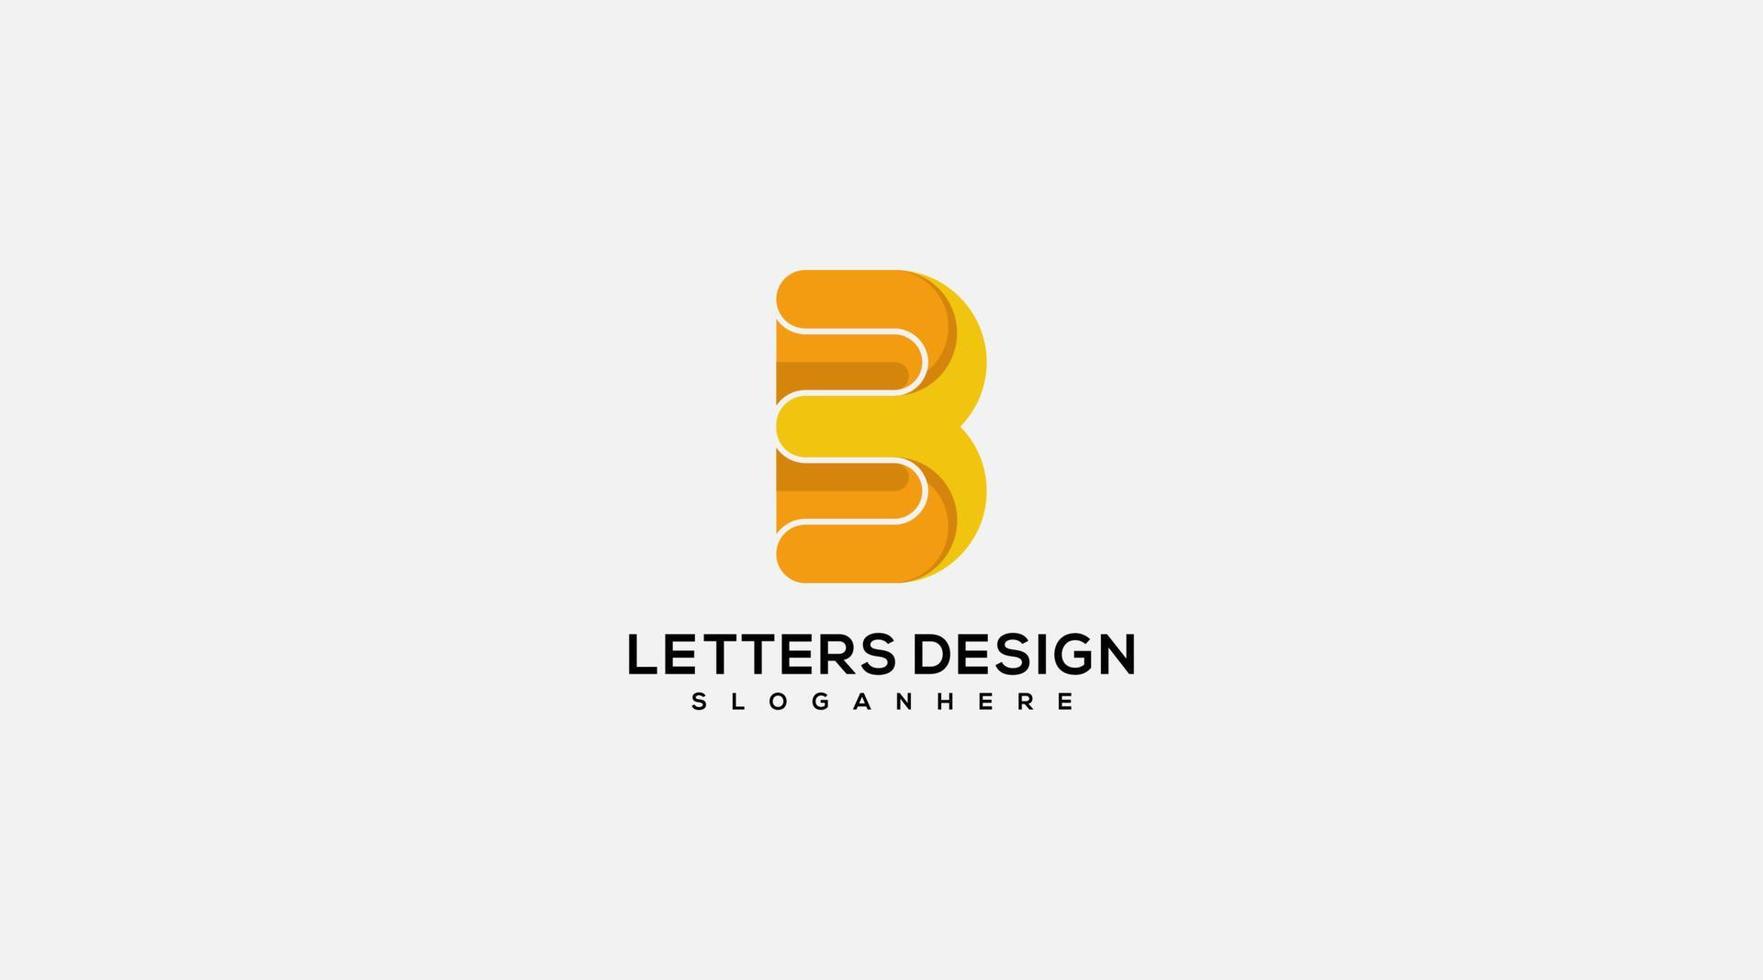 Letter B design logo design vector template